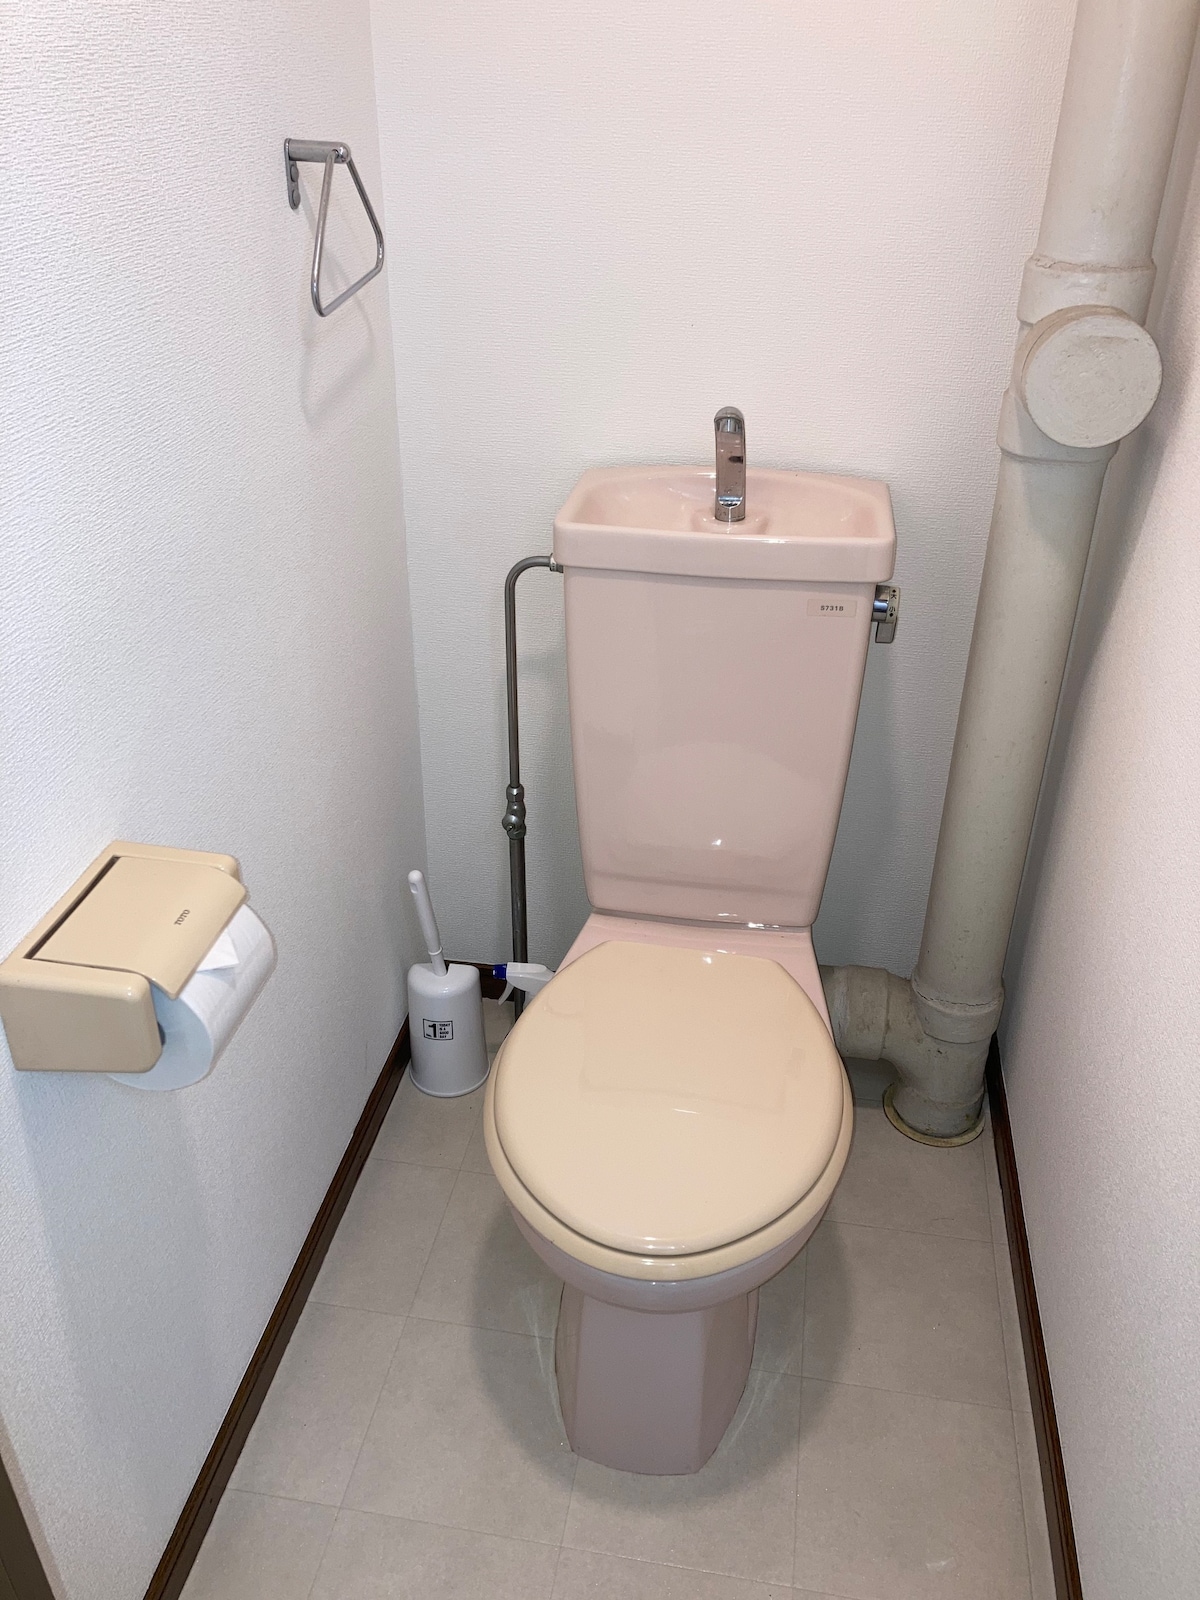 太宰府市
天満宮2.4Km
個別の風呂、トイレ
停车位收费500日元， 230米